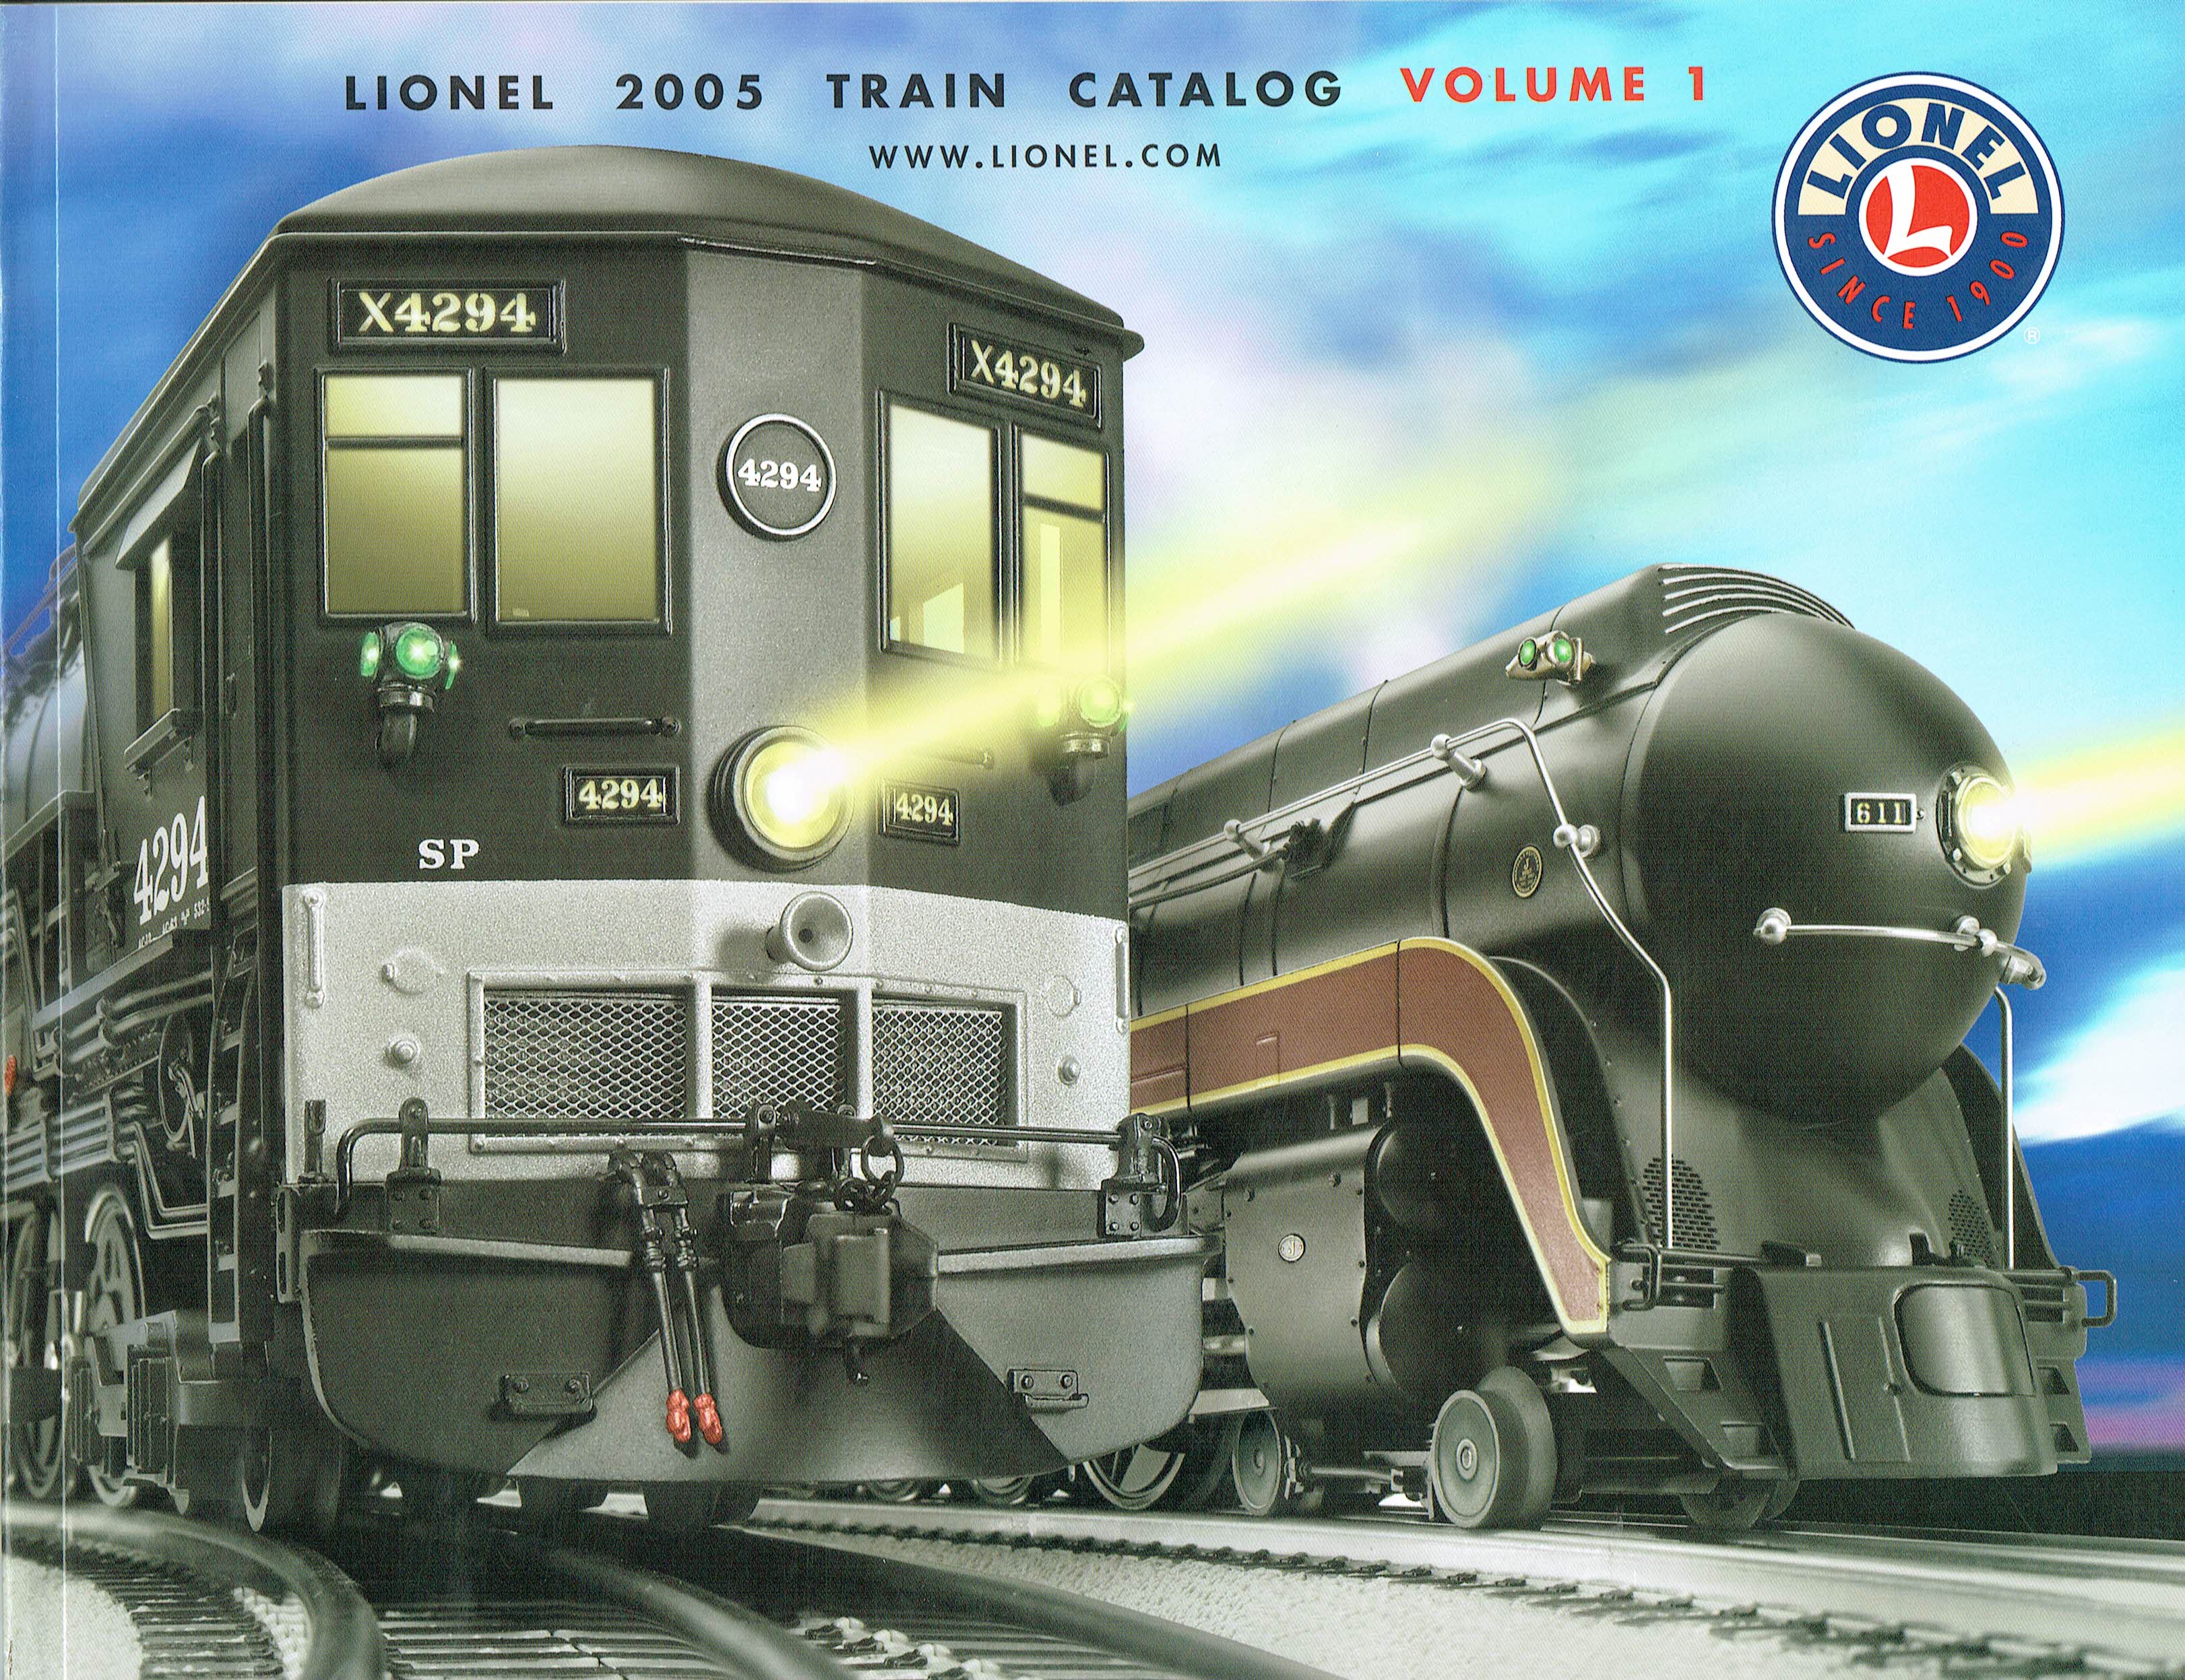 Lionel 2005 Train Catalog Volume 1 image